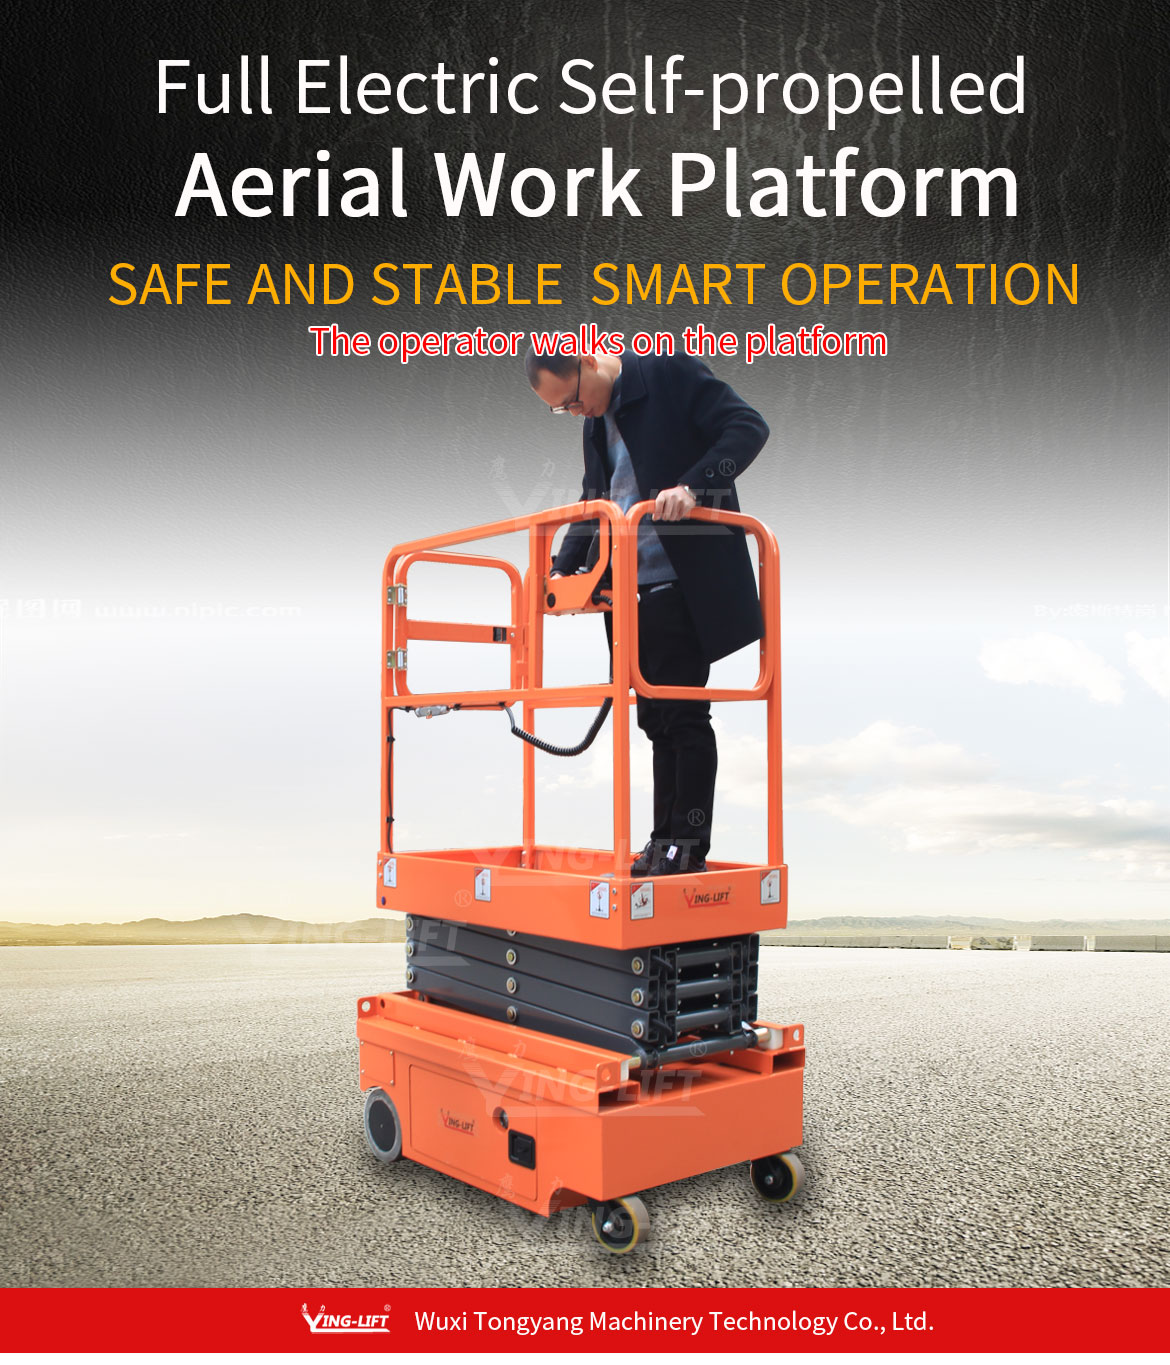 Full Electric Self-propelled Aerial Work Platform